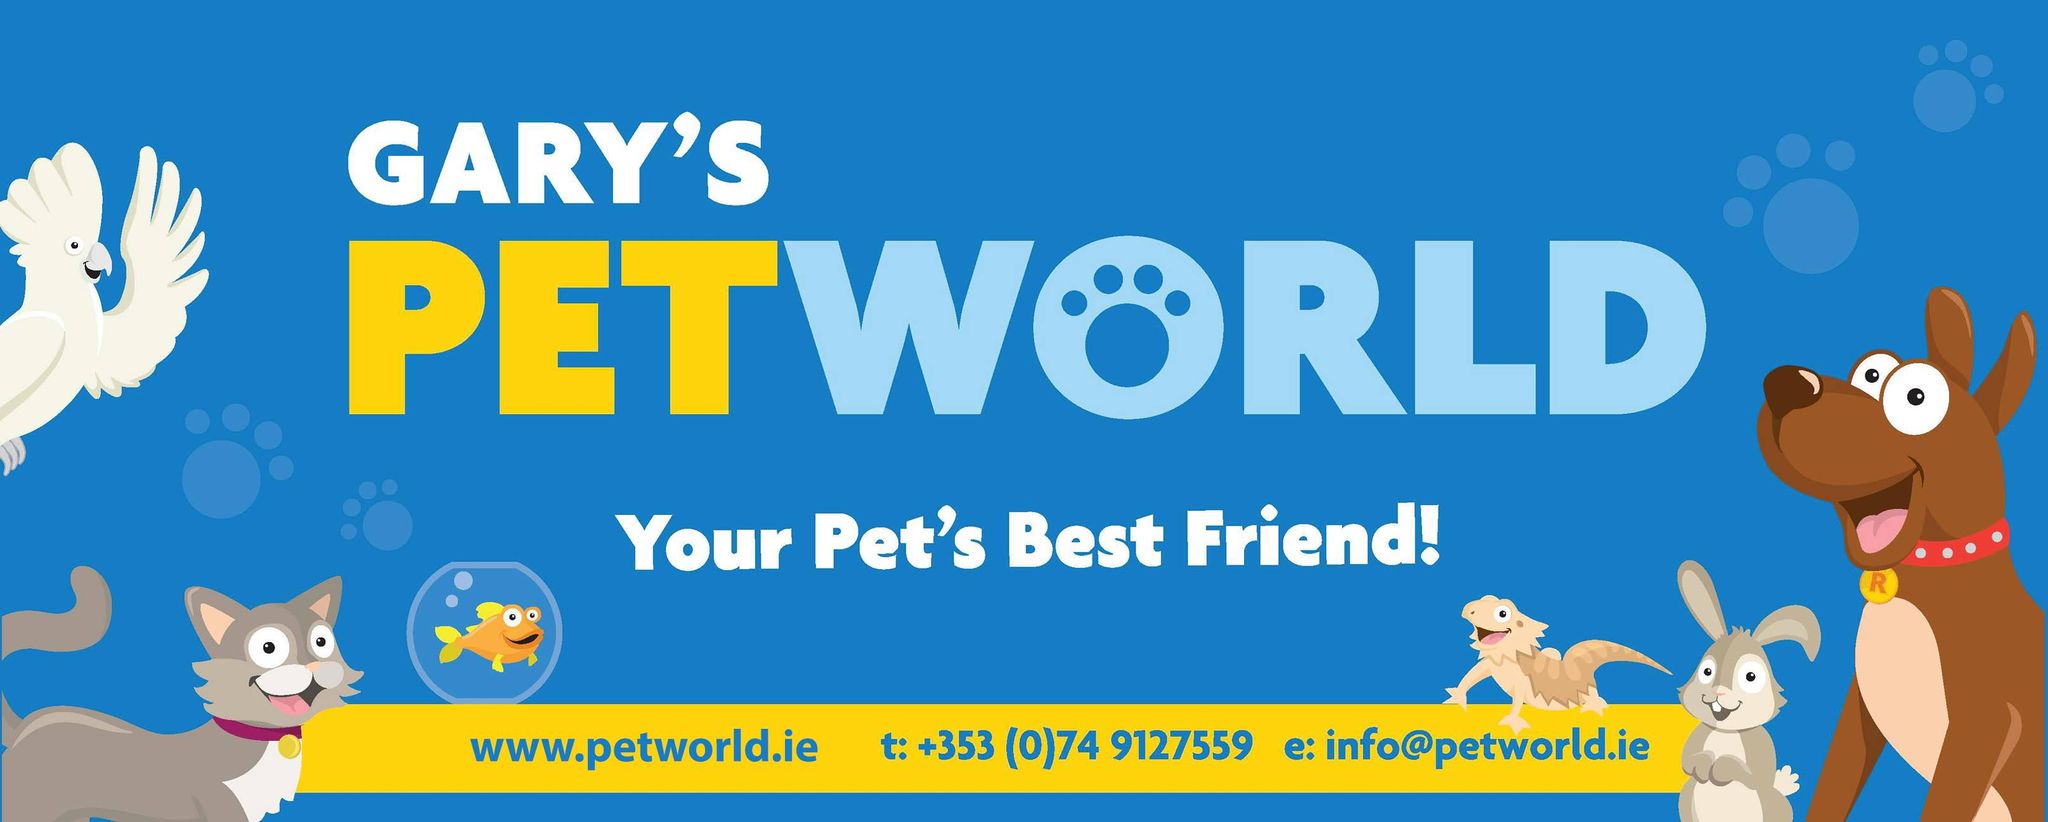 Gary's Pet World Banner